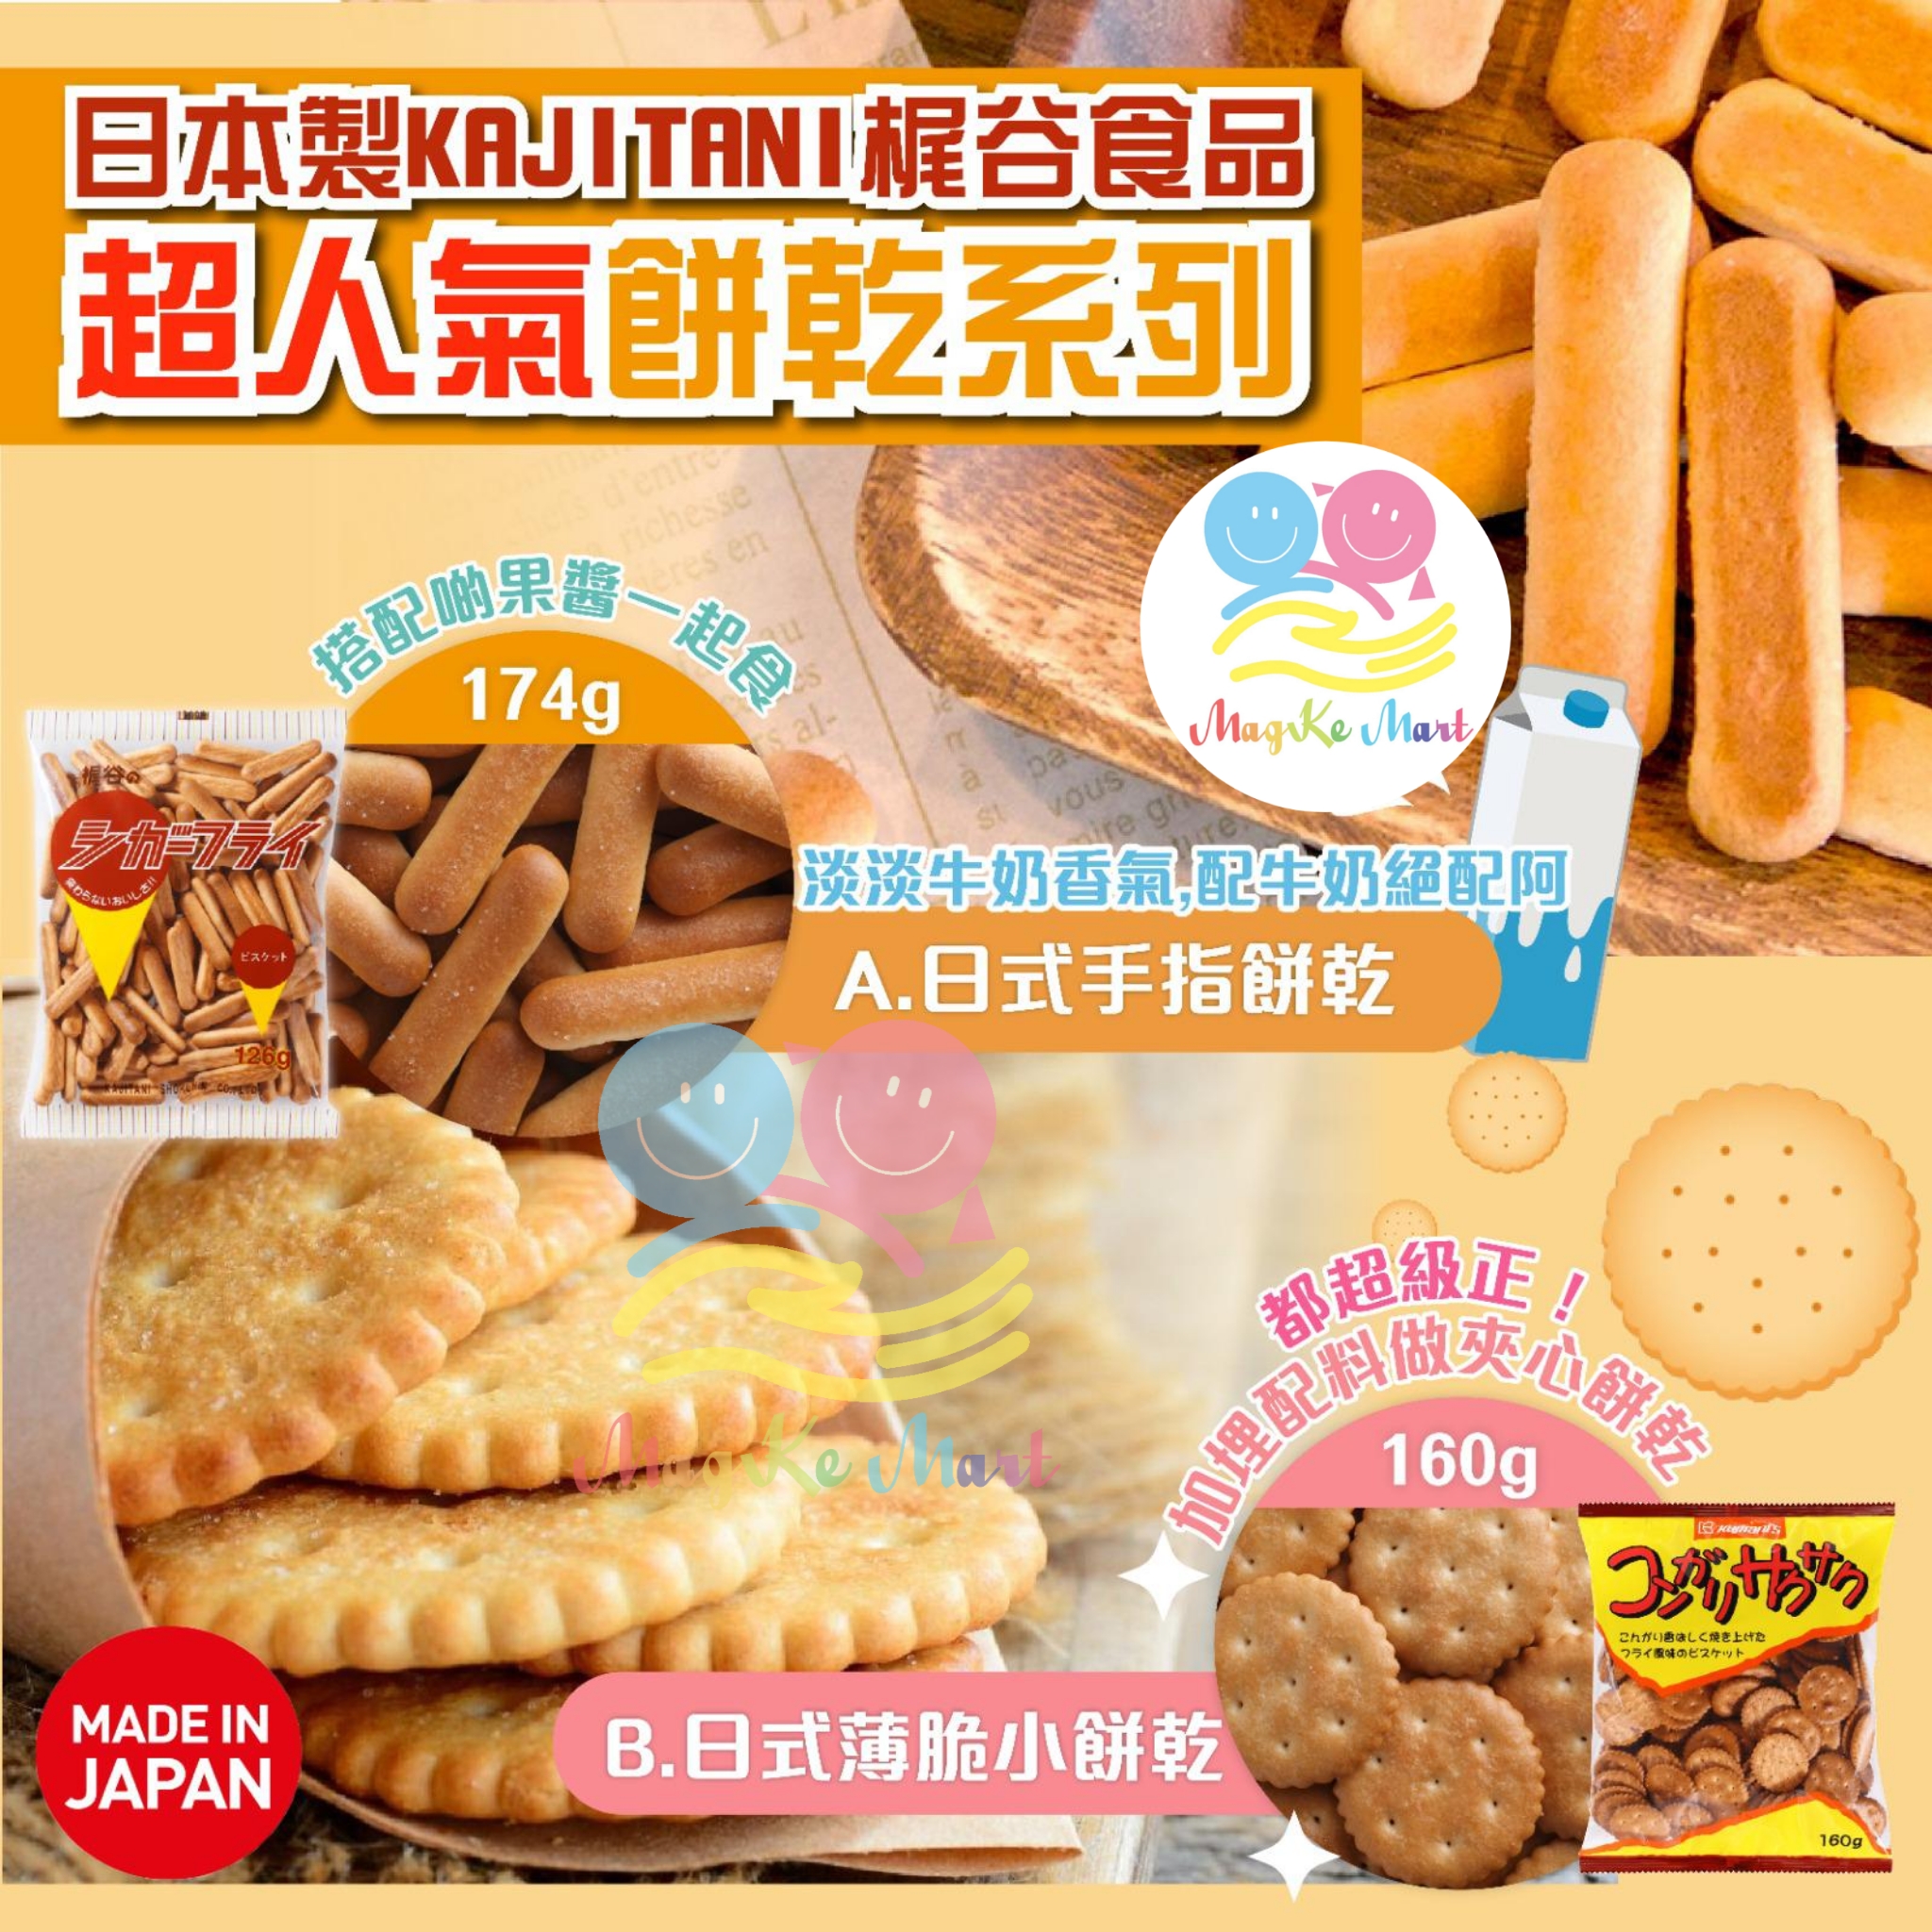 日本 KAJITANI 梶谷食品超人氣餅乾系列